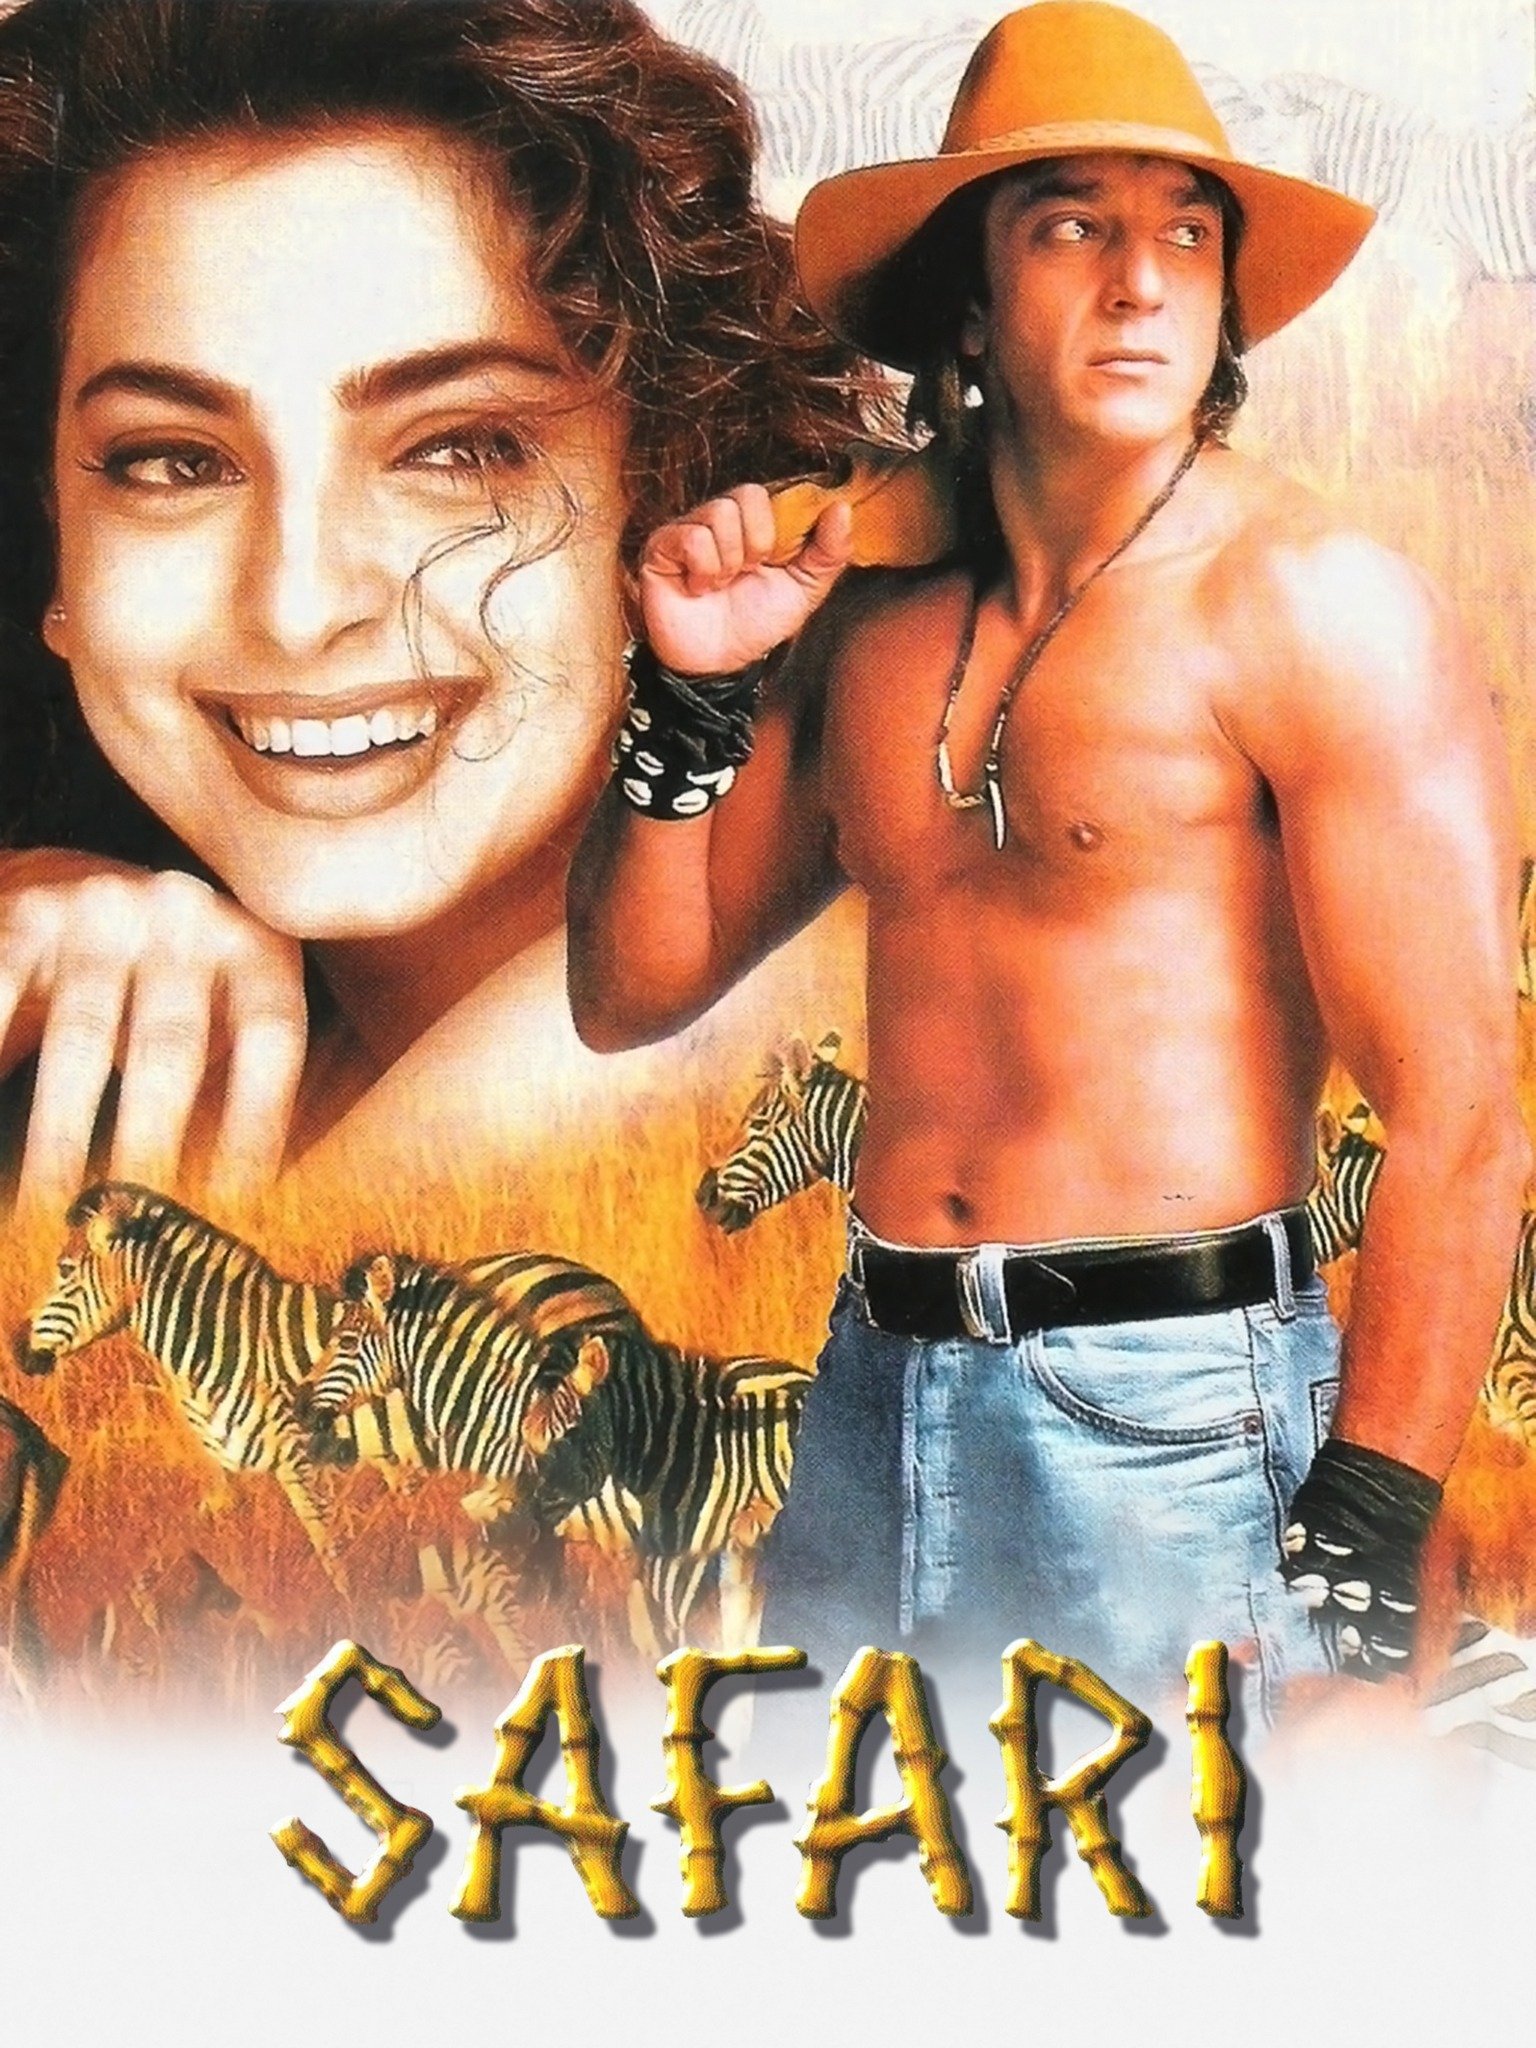 safari 2014 movie